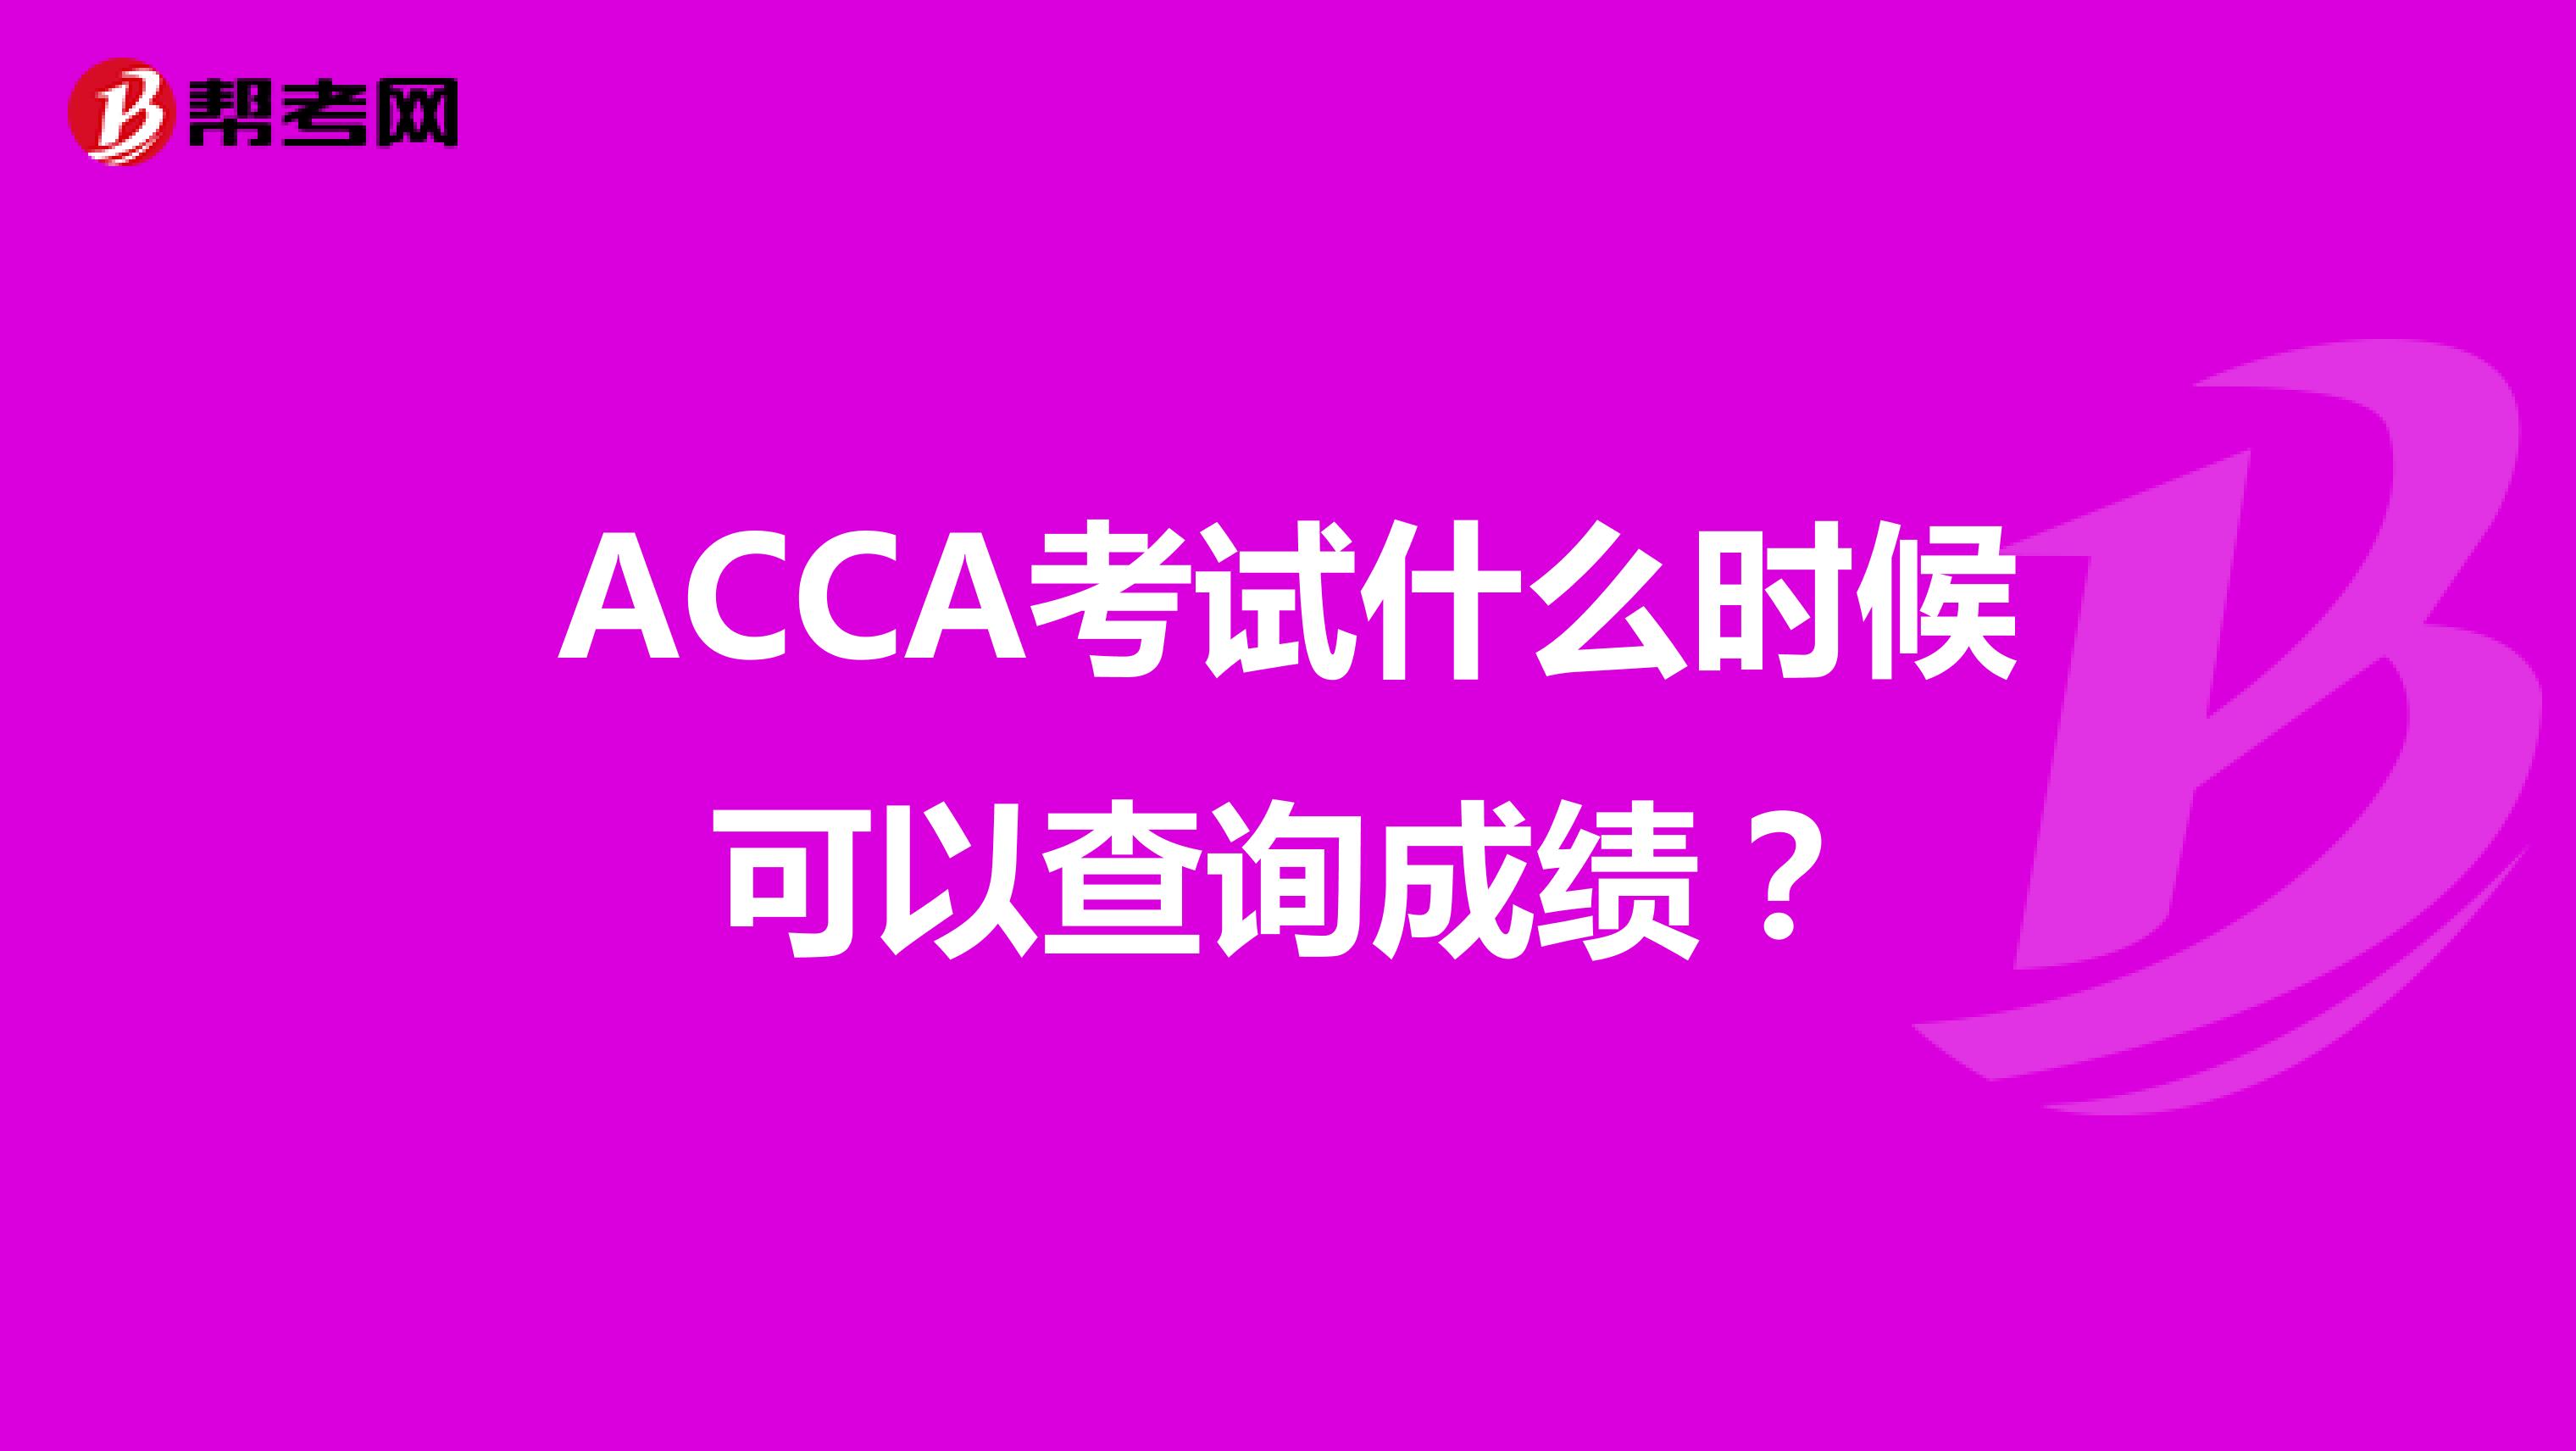 ACCA考试什么时候可以查询成绩？